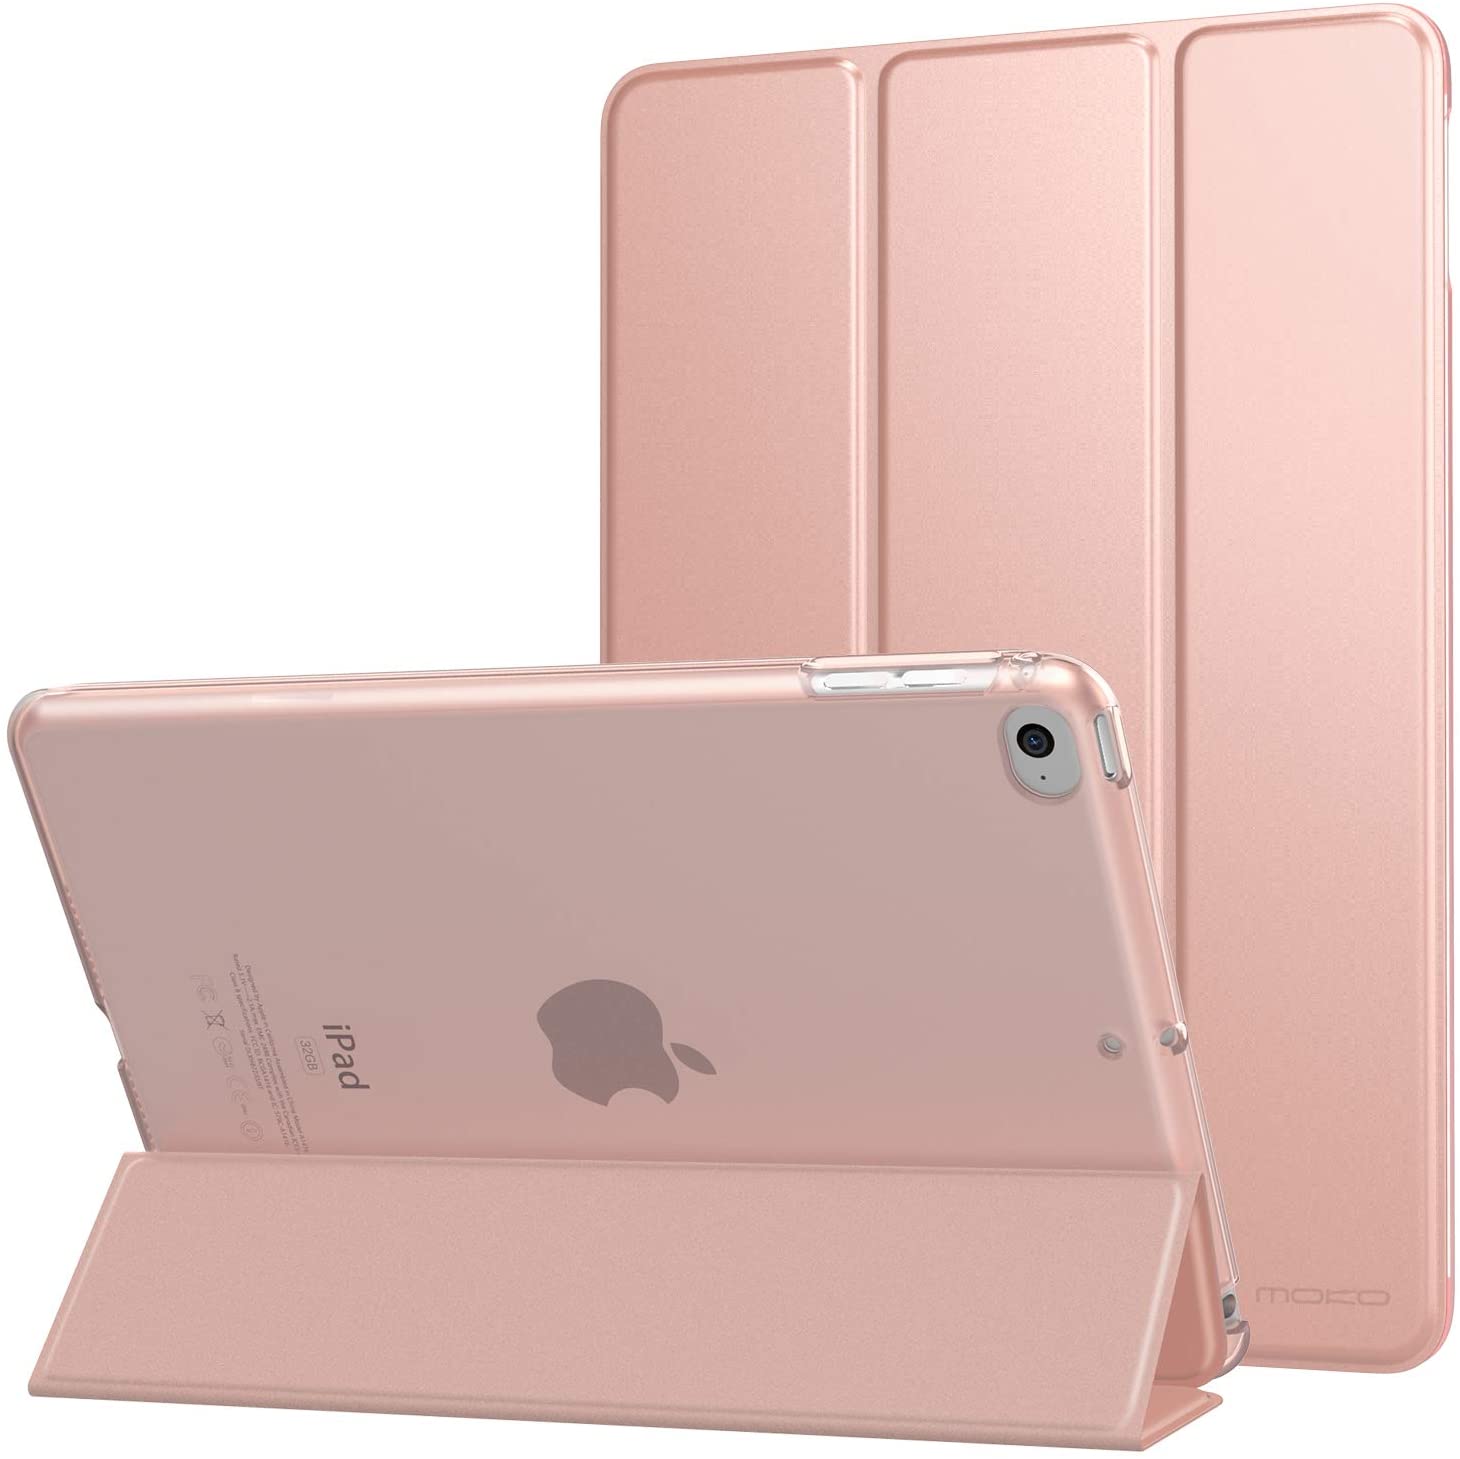 MOKO Case for iPad Mini 4 (2015 Model Mini 4th Generation) - ROSE GOLD. - e4cents